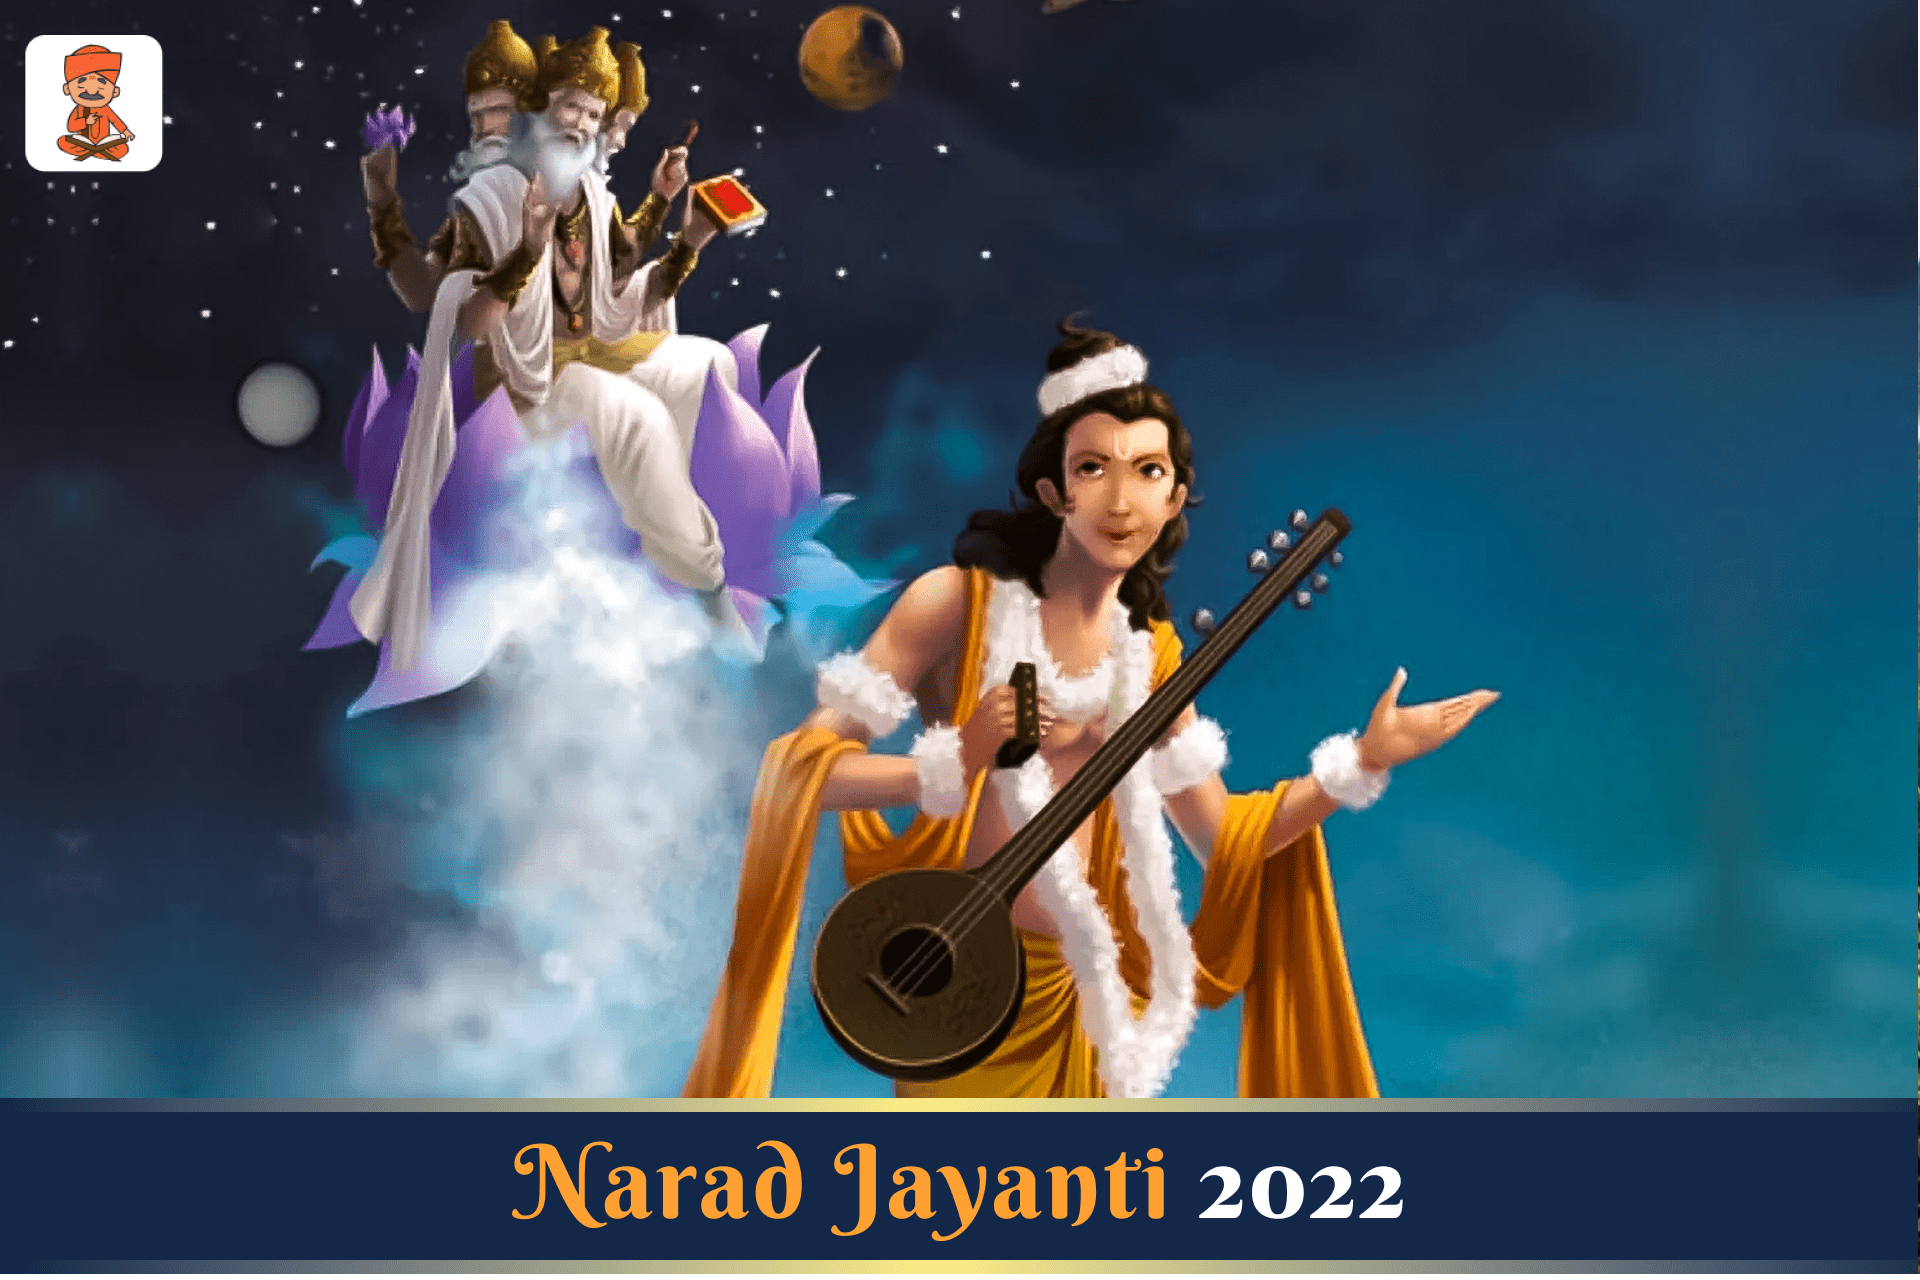 Narad Jayanti 2022: बेहद रोचक है नारद मुनि की कहानी! जाने इसका शुभ मुहूर्त व तिथि